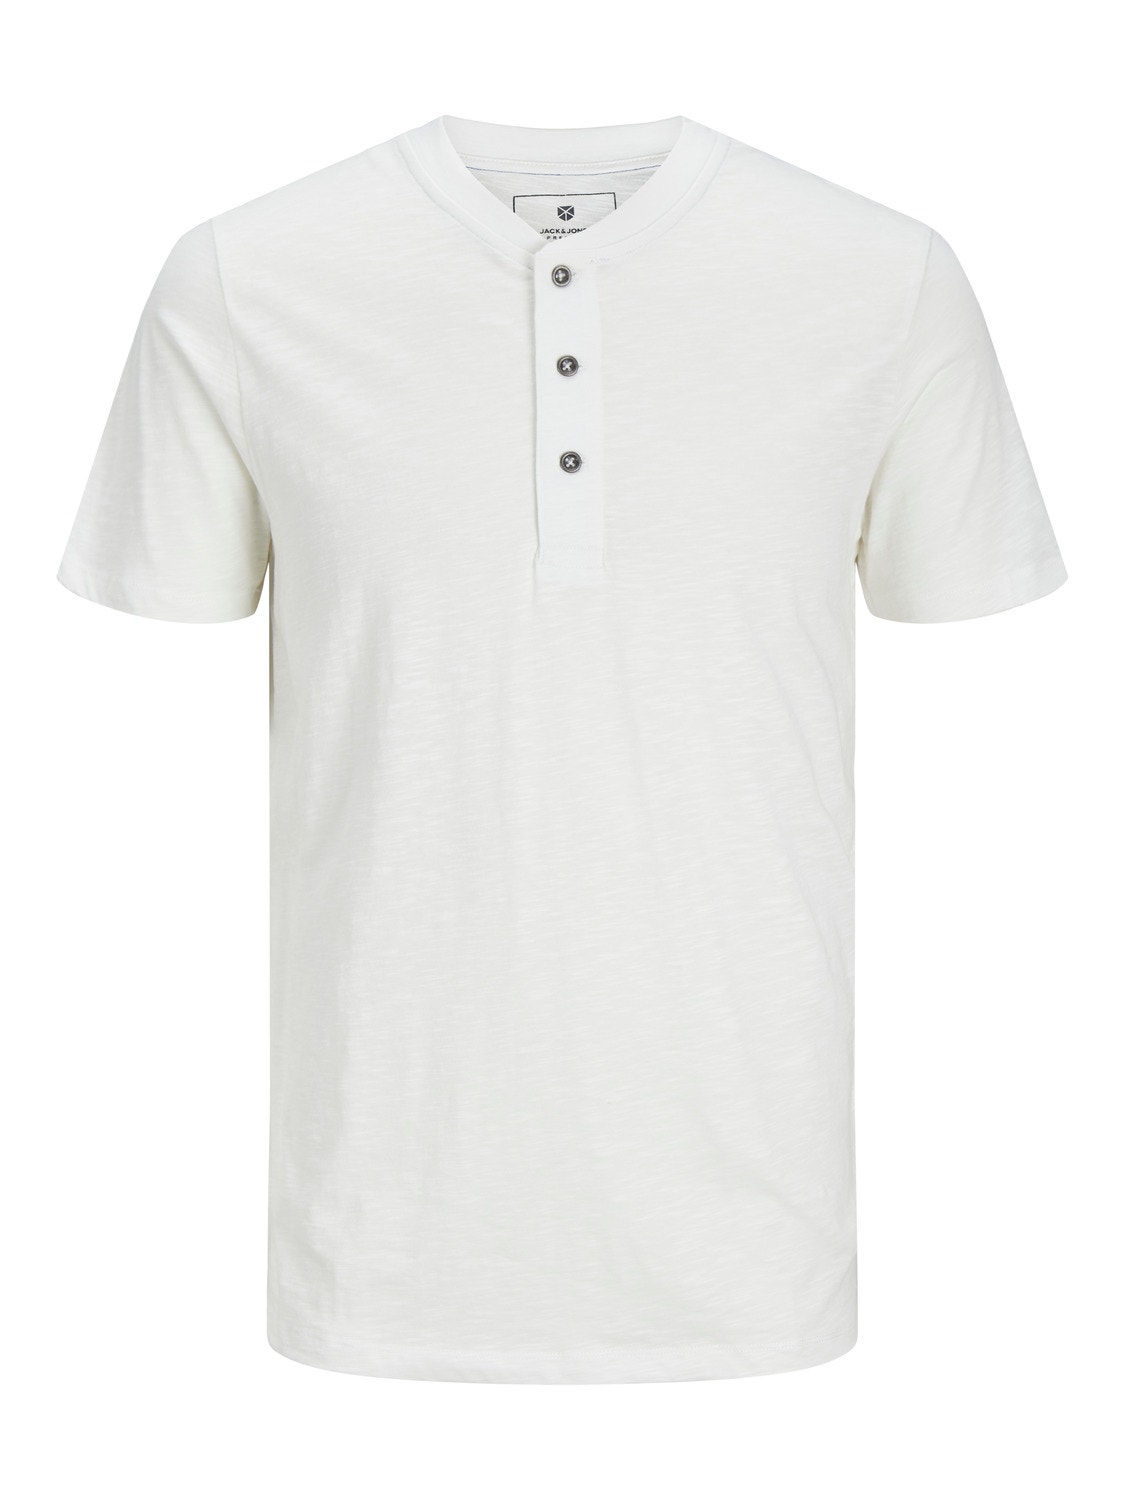 Jack & Jones Plain China Collar T-shirt -Cloud Dancer - 12257965